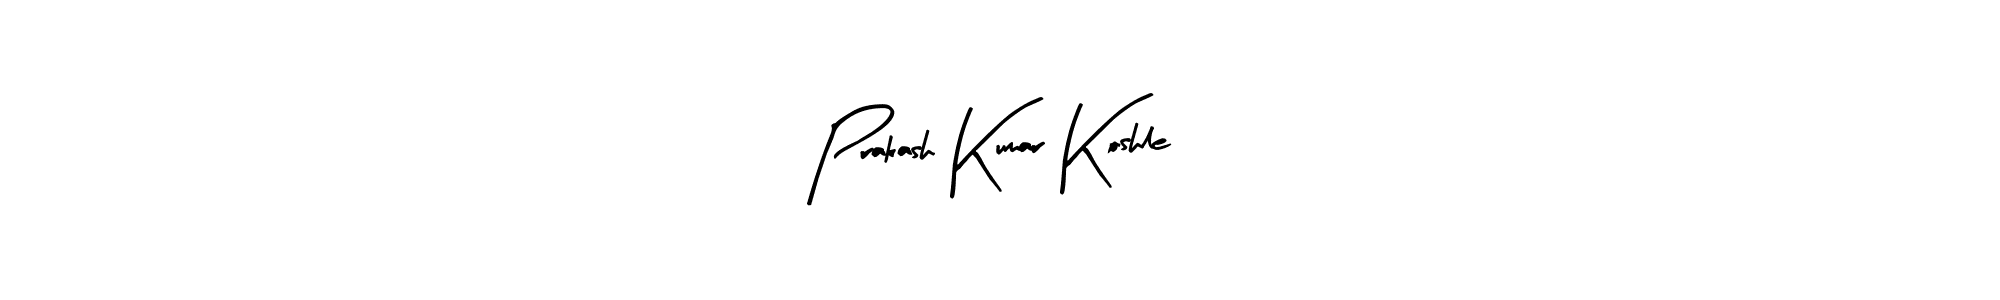 How to Draw Prakash Kumar Koshle signature style? Arty Signature is a latest design signature styles for name Prakash Kumar Koshle. Prakash Kumar Koshle signature style 8 images and pictures png